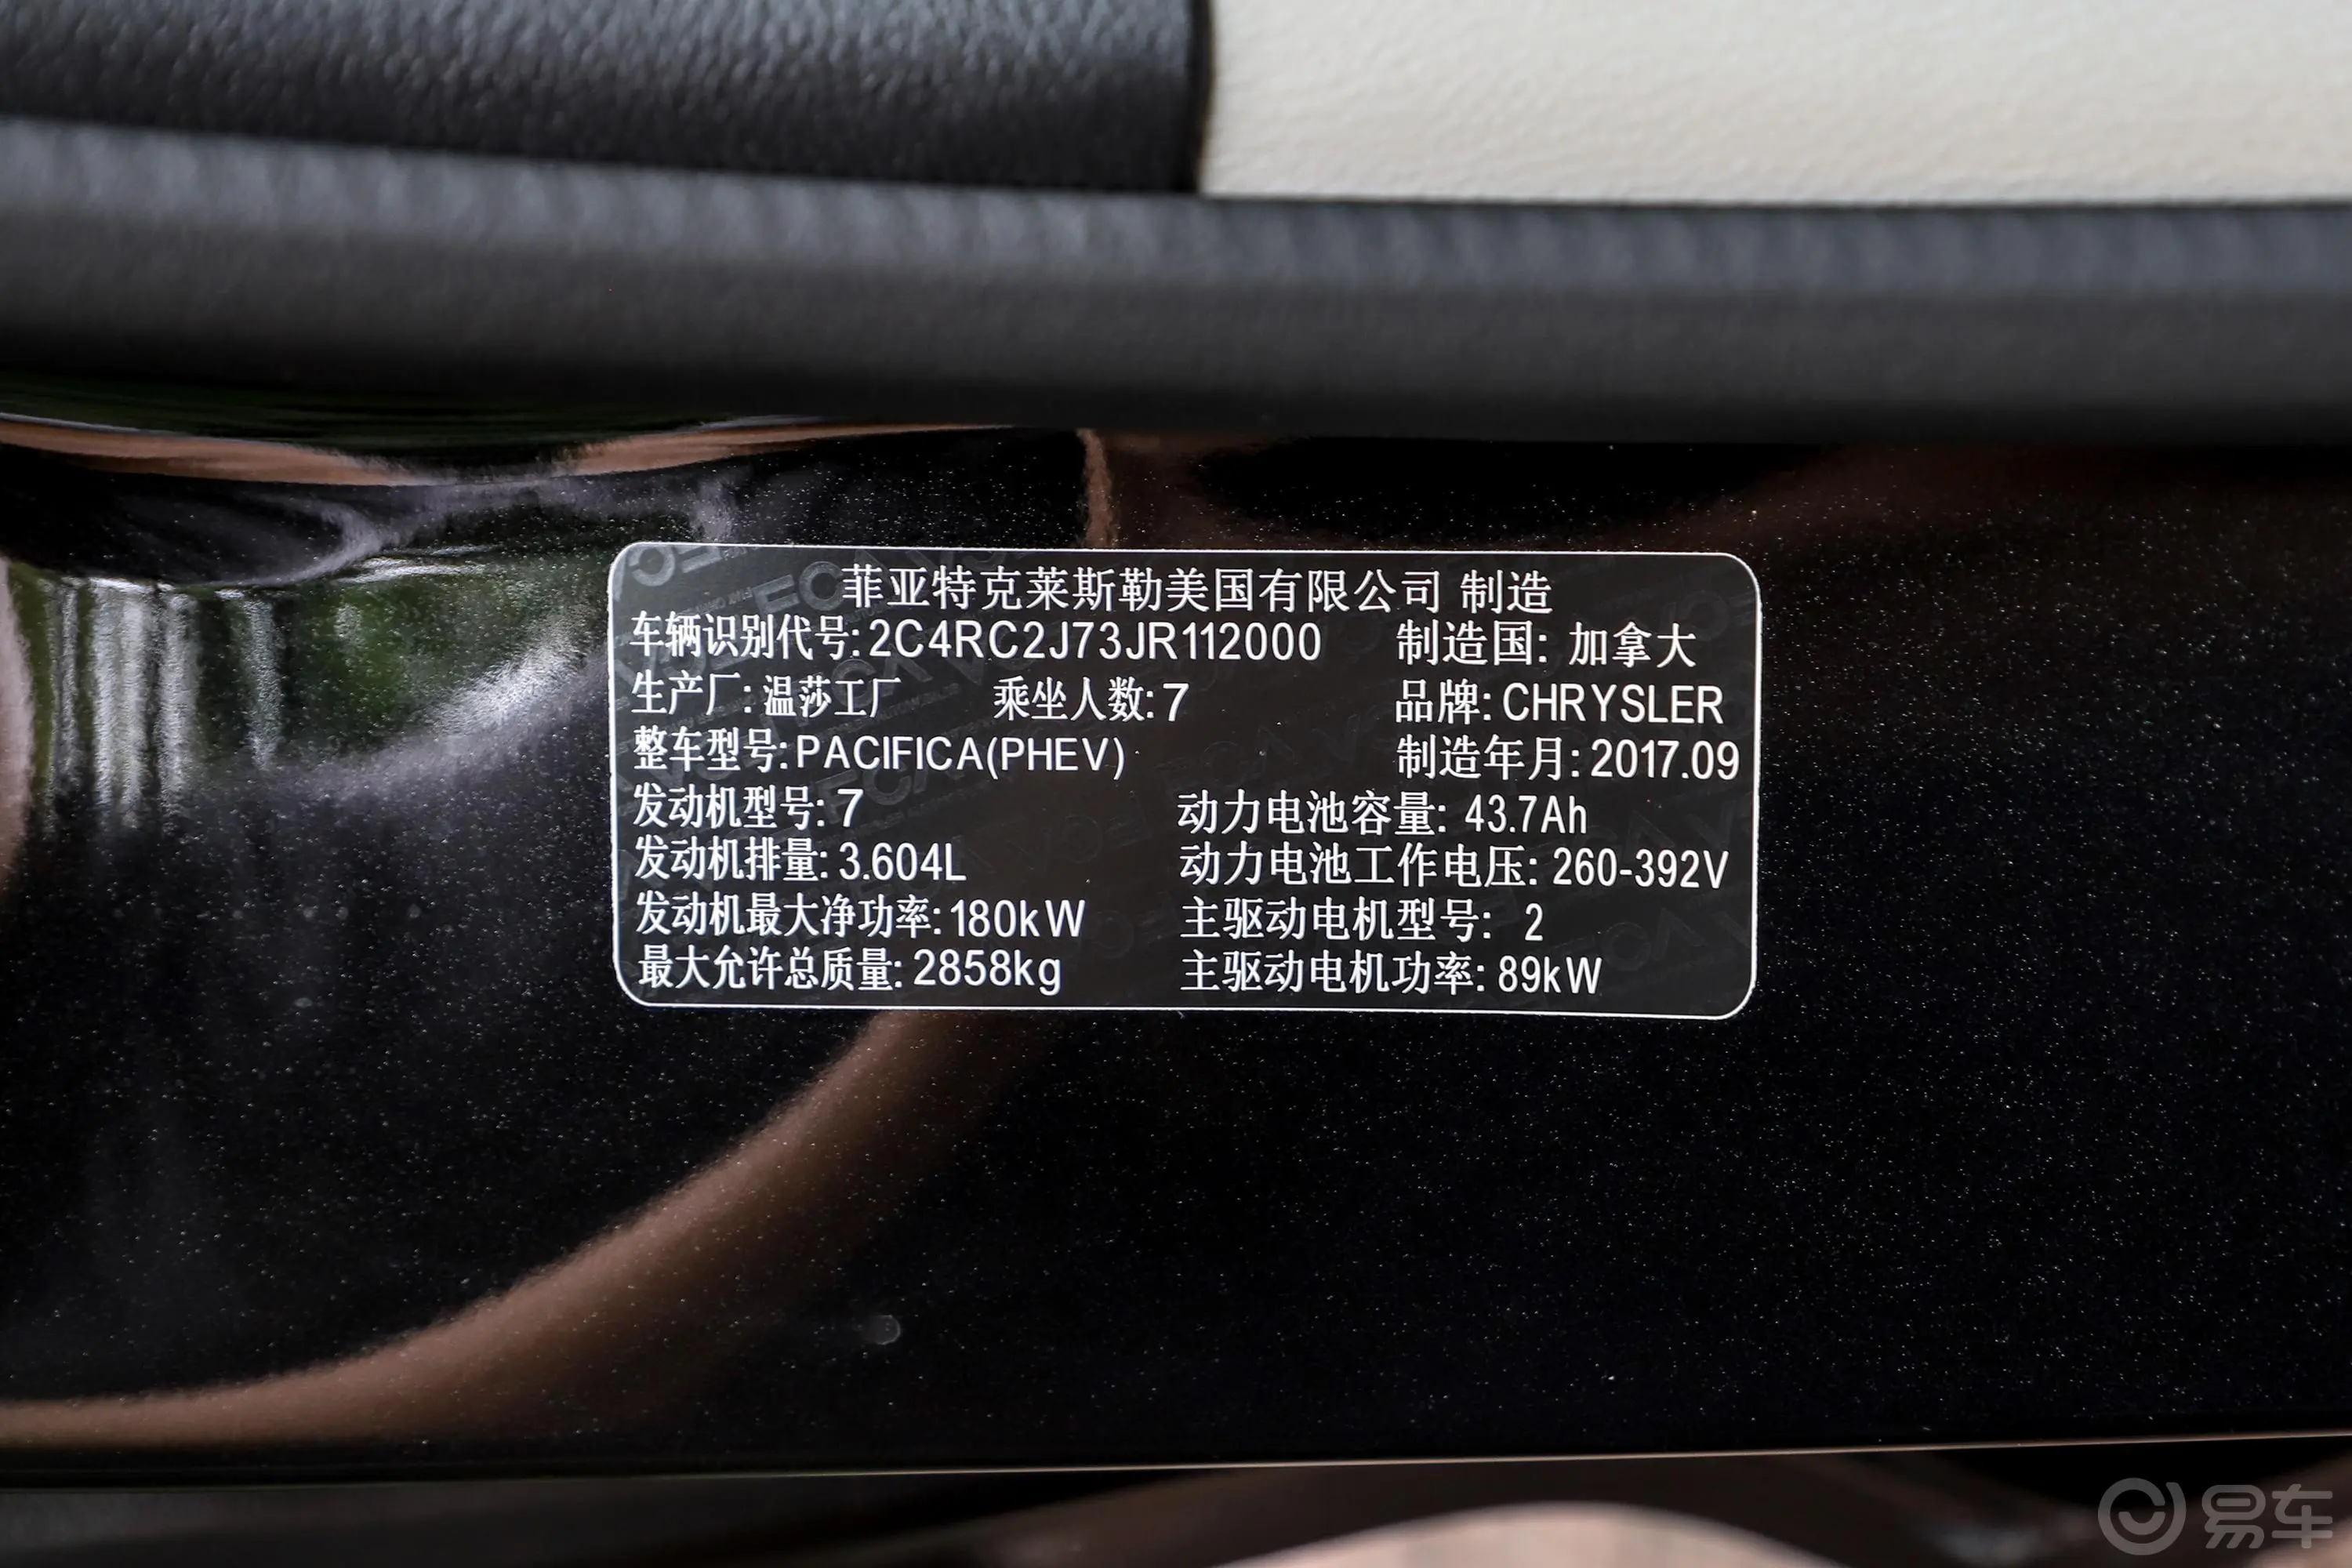 大捷龙 插电混动(进口)3.6L E-CVT 插电混动版车辆信息铭牌